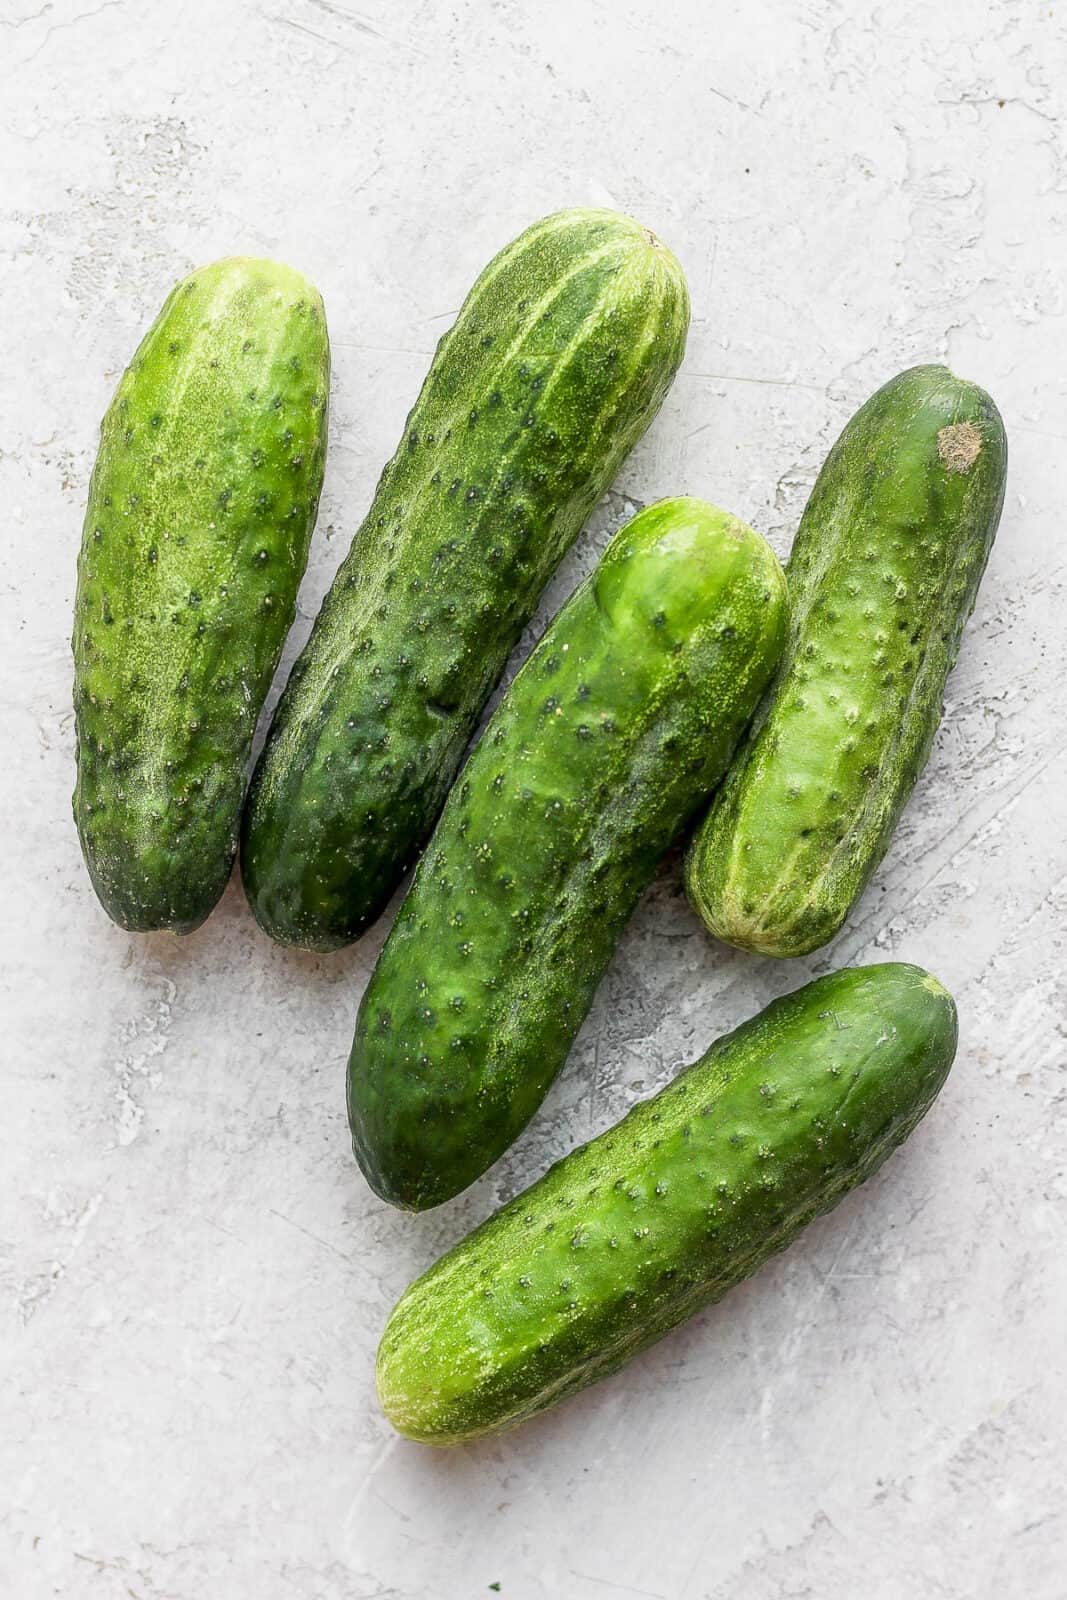 Pickling cucumbers.